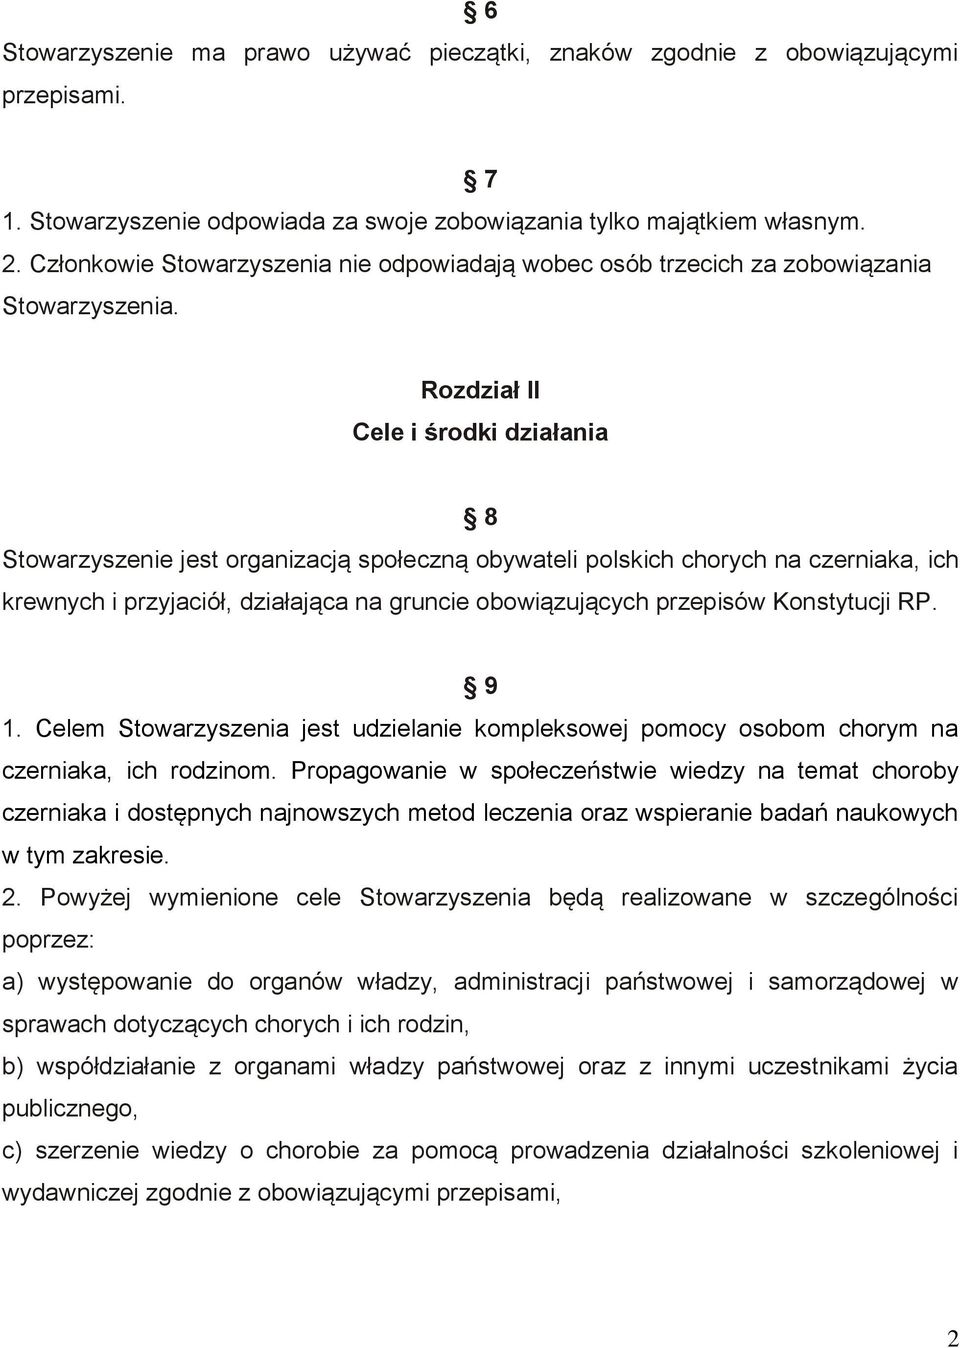 Rozdział II Cele i środki działania 8 Stowarzyszenie jest organizacją społeczną obywateli polskich chorych na czerniaka, ich krewnych i przyjaciół, działająca na gruncie obowiązujących przepisów